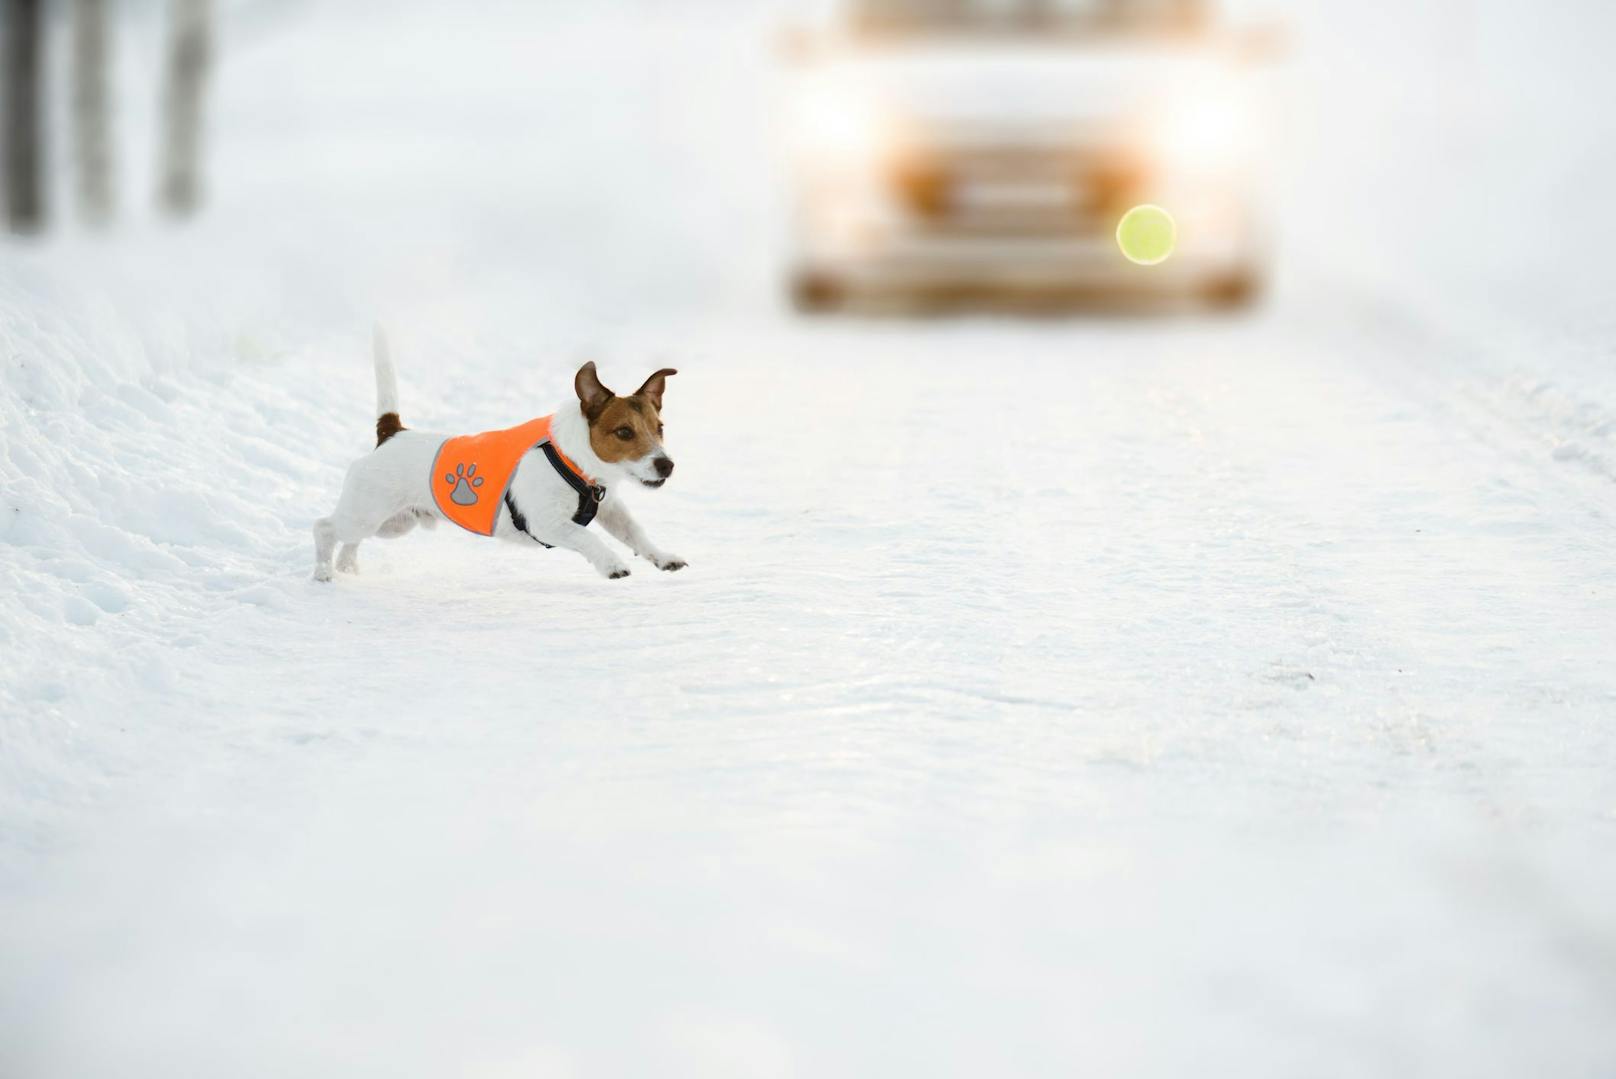 Da es bereits um 17:00 Uhr im Winter zappenduster ist, sollte man für den Hund Vorkehrungen treffen, wie eine Reflektierende Jacke.&nbsp;